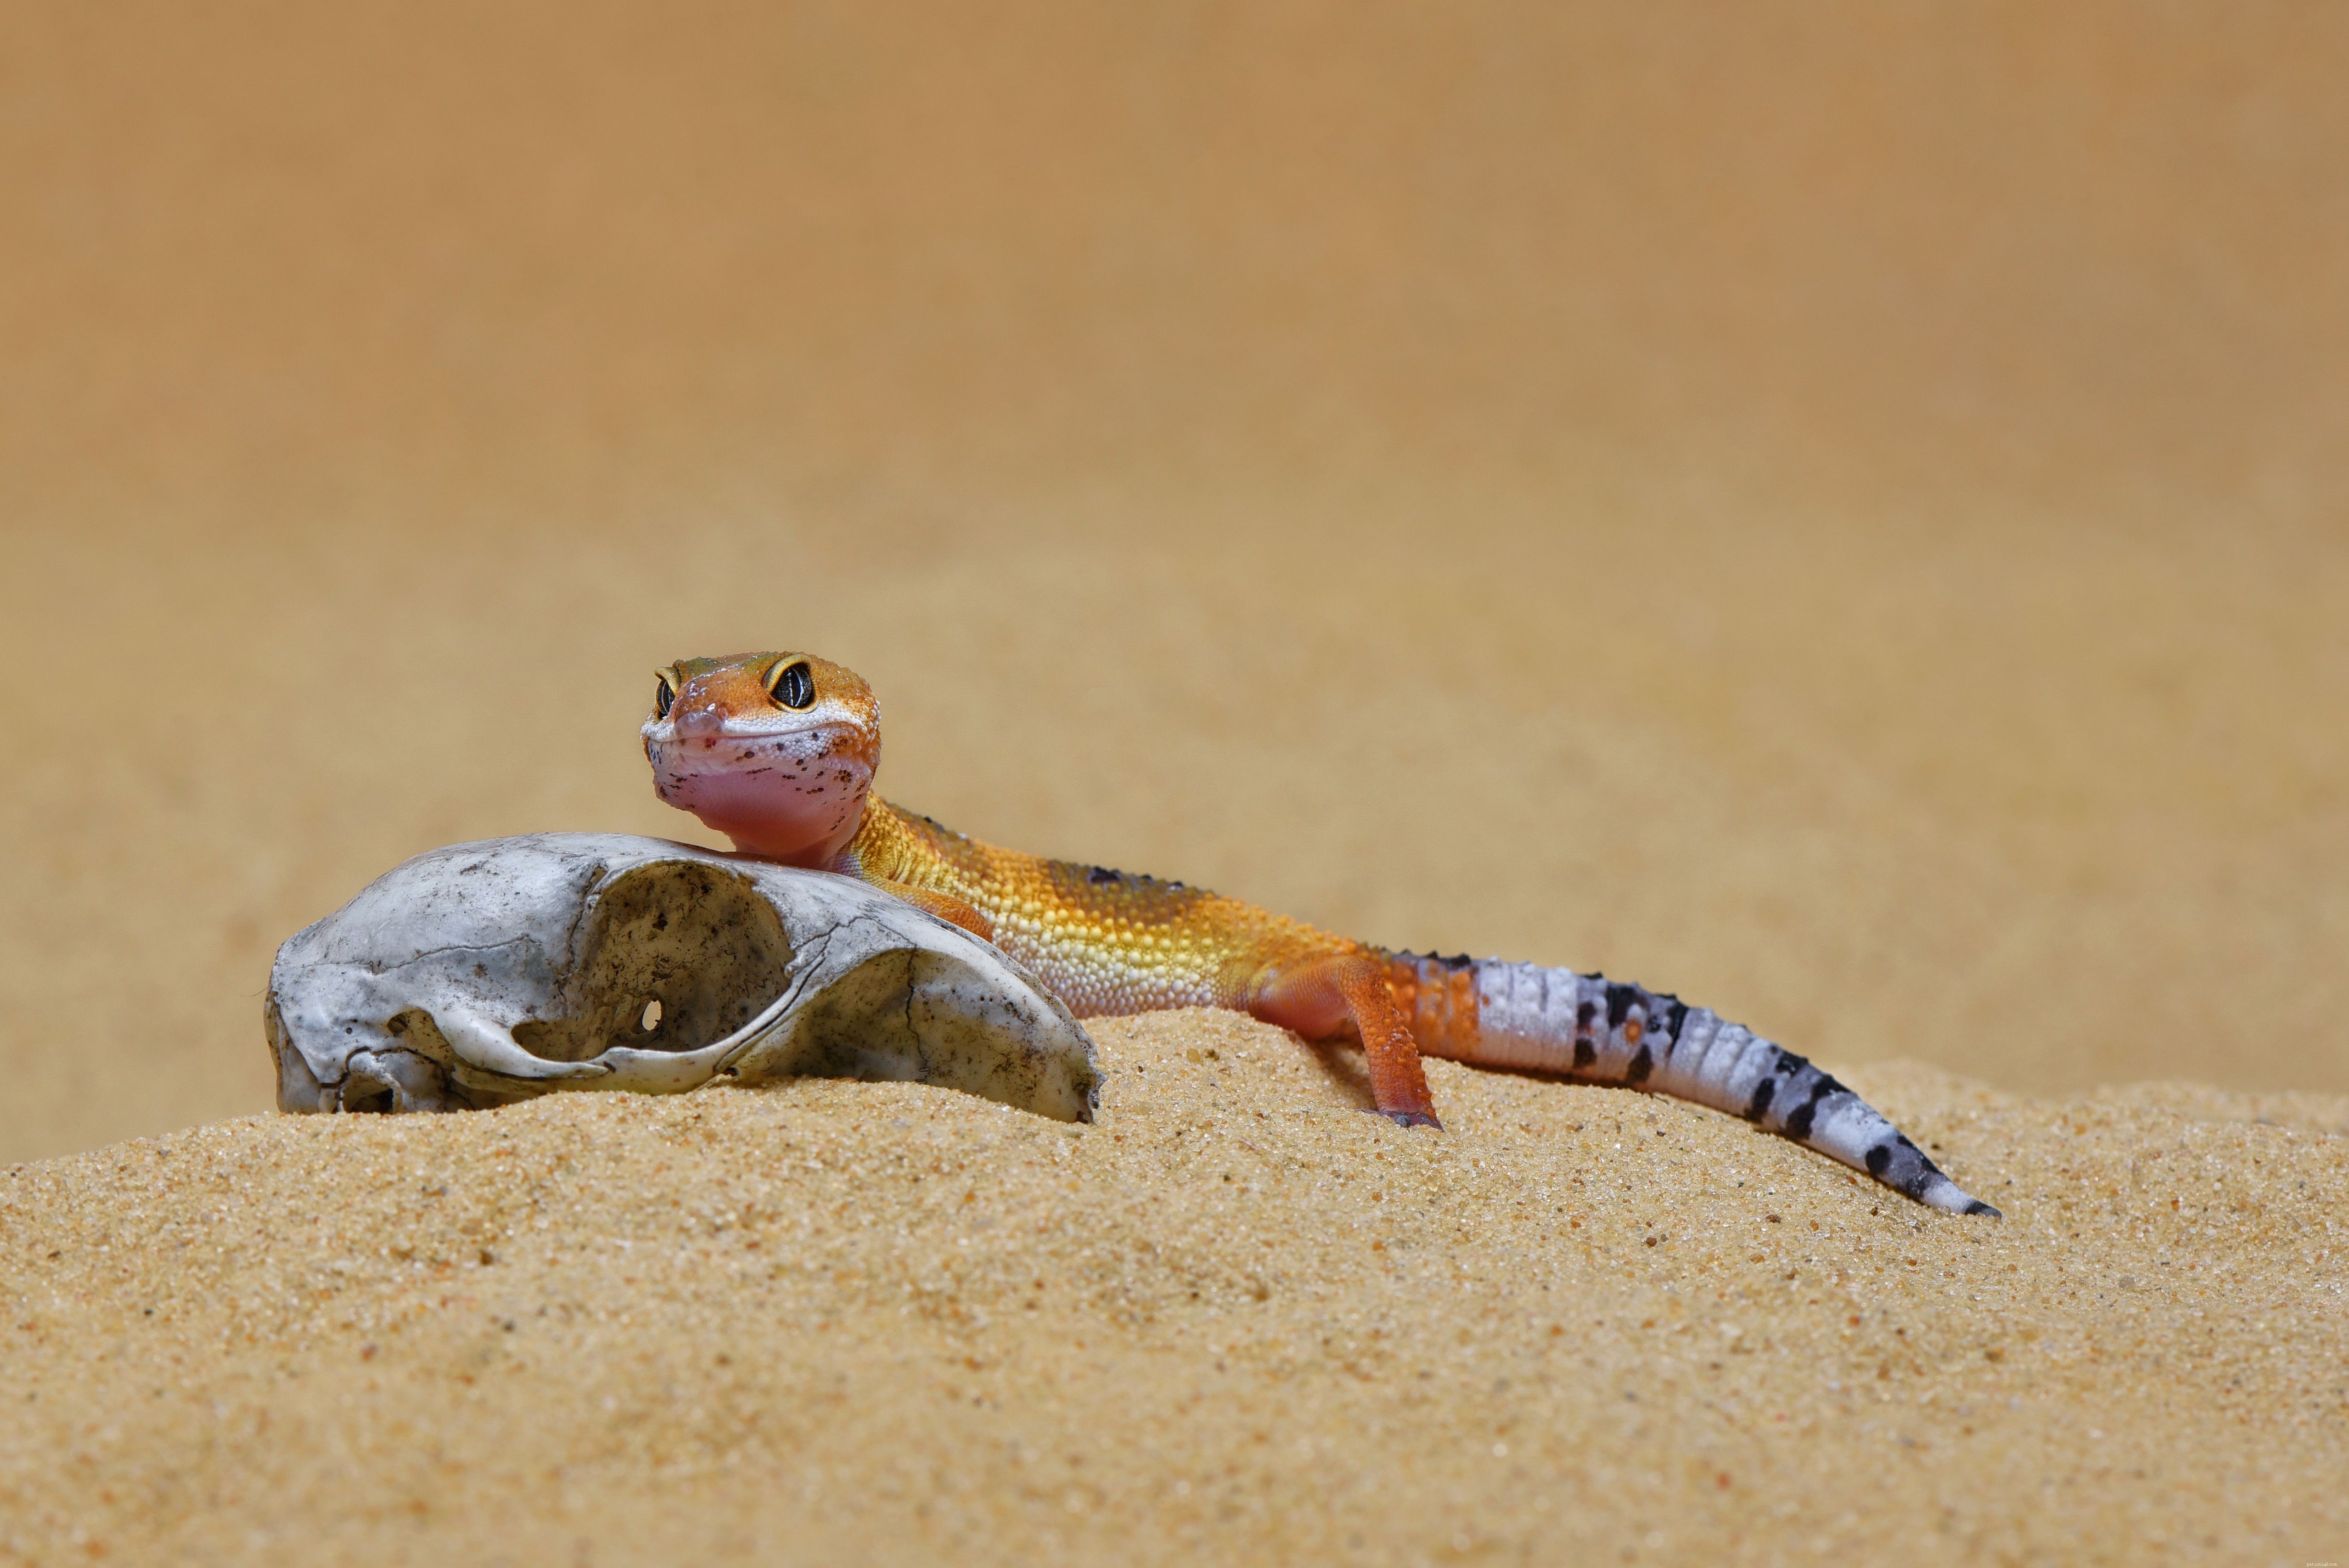 Choisir un substrat de gecko léopard